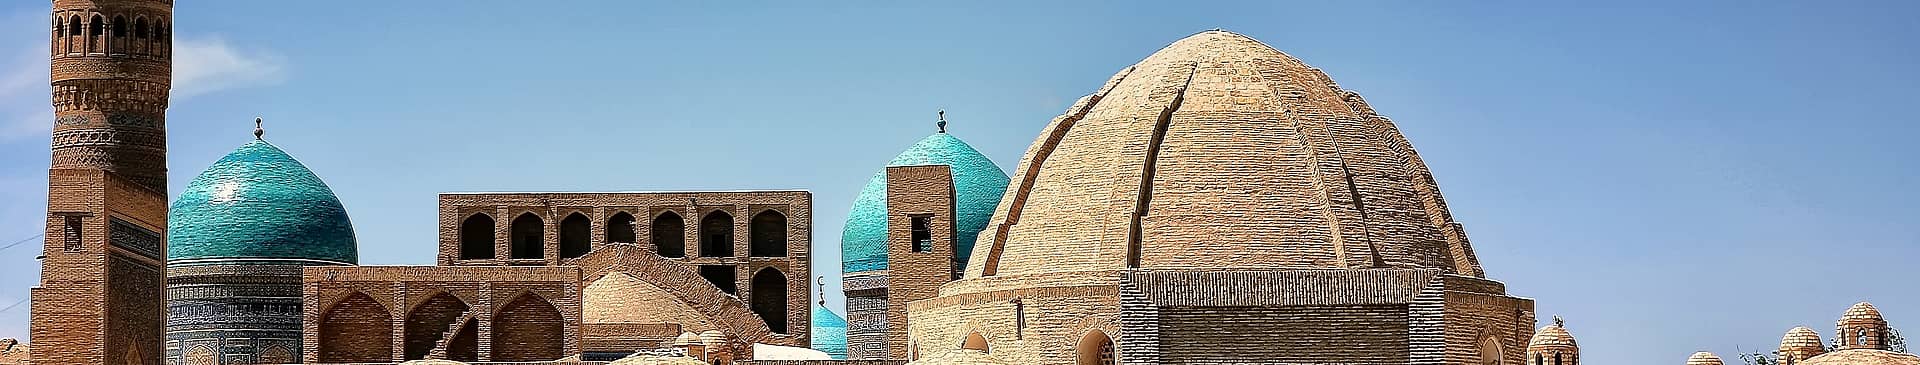 Uzbekistan in June